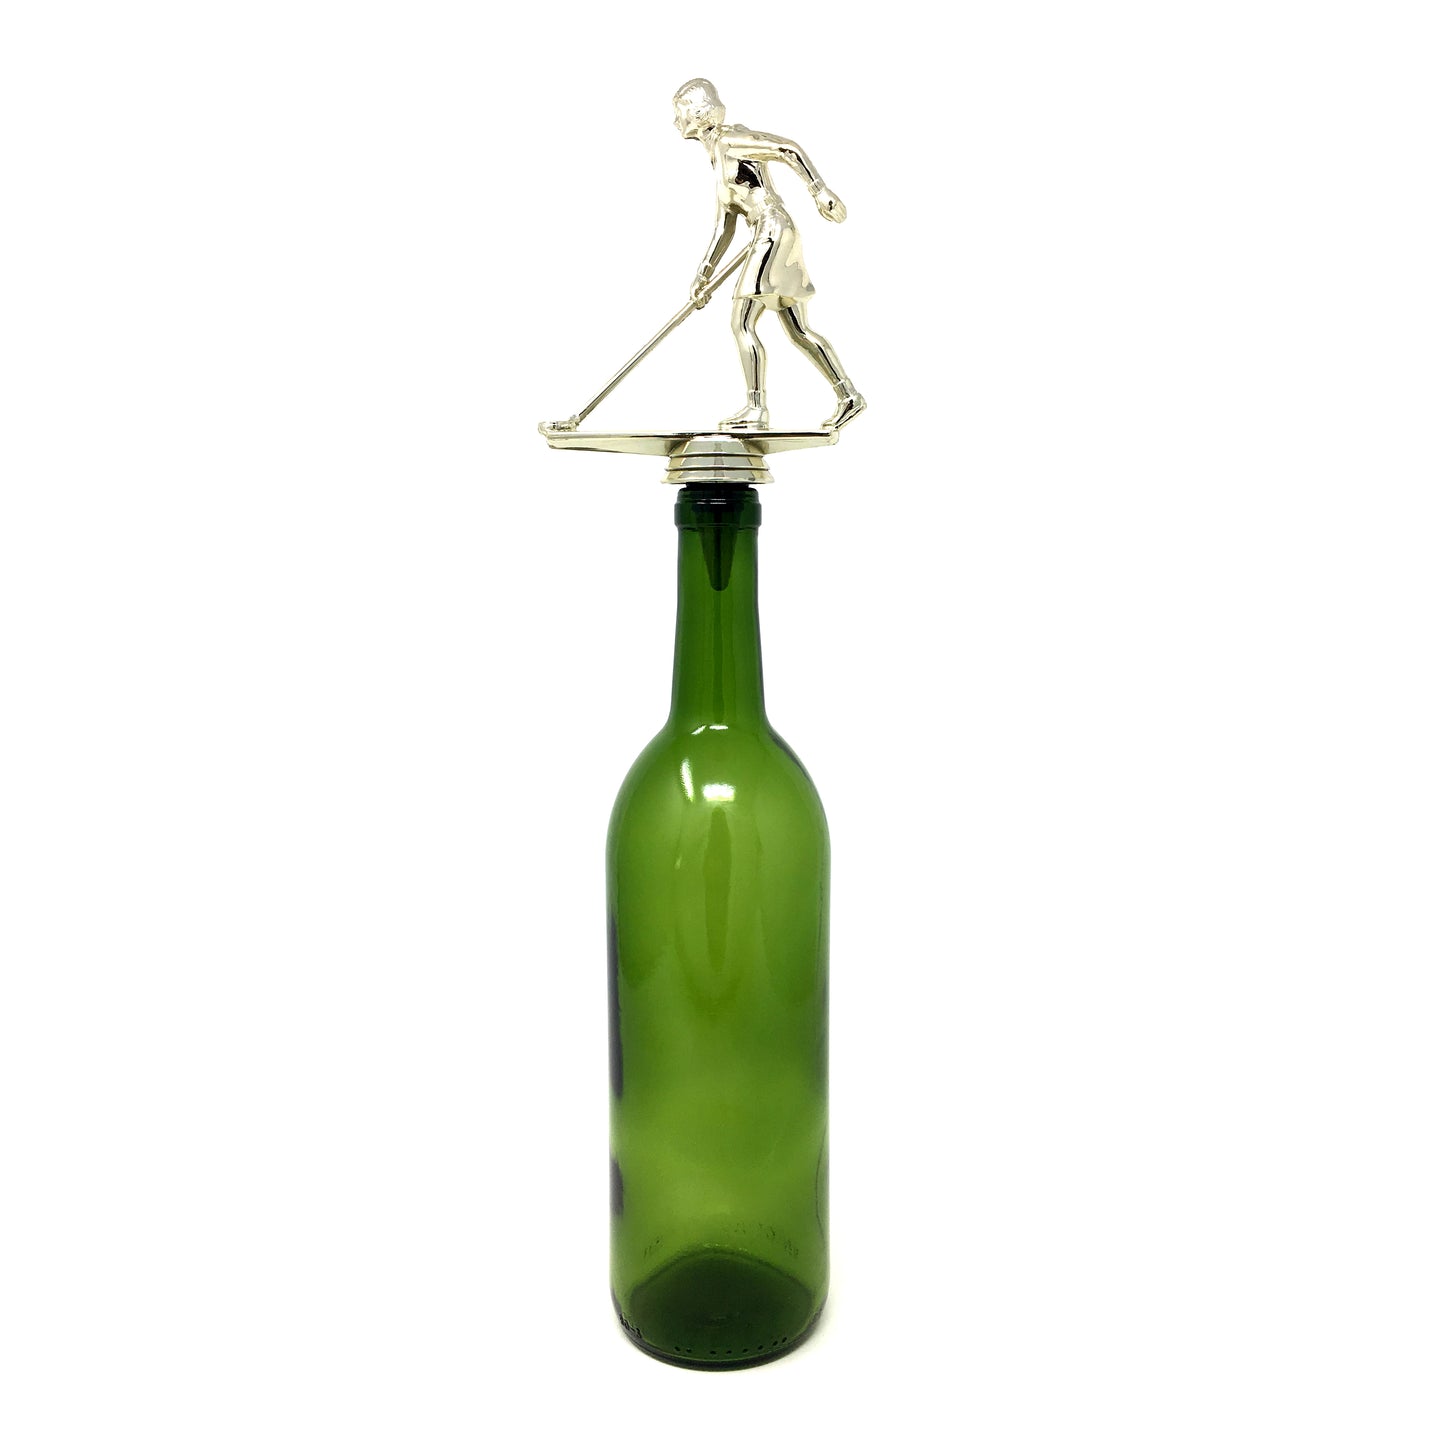 Shuffleboard Trophy Wine Bottle Stopper with Stainless Steel Base